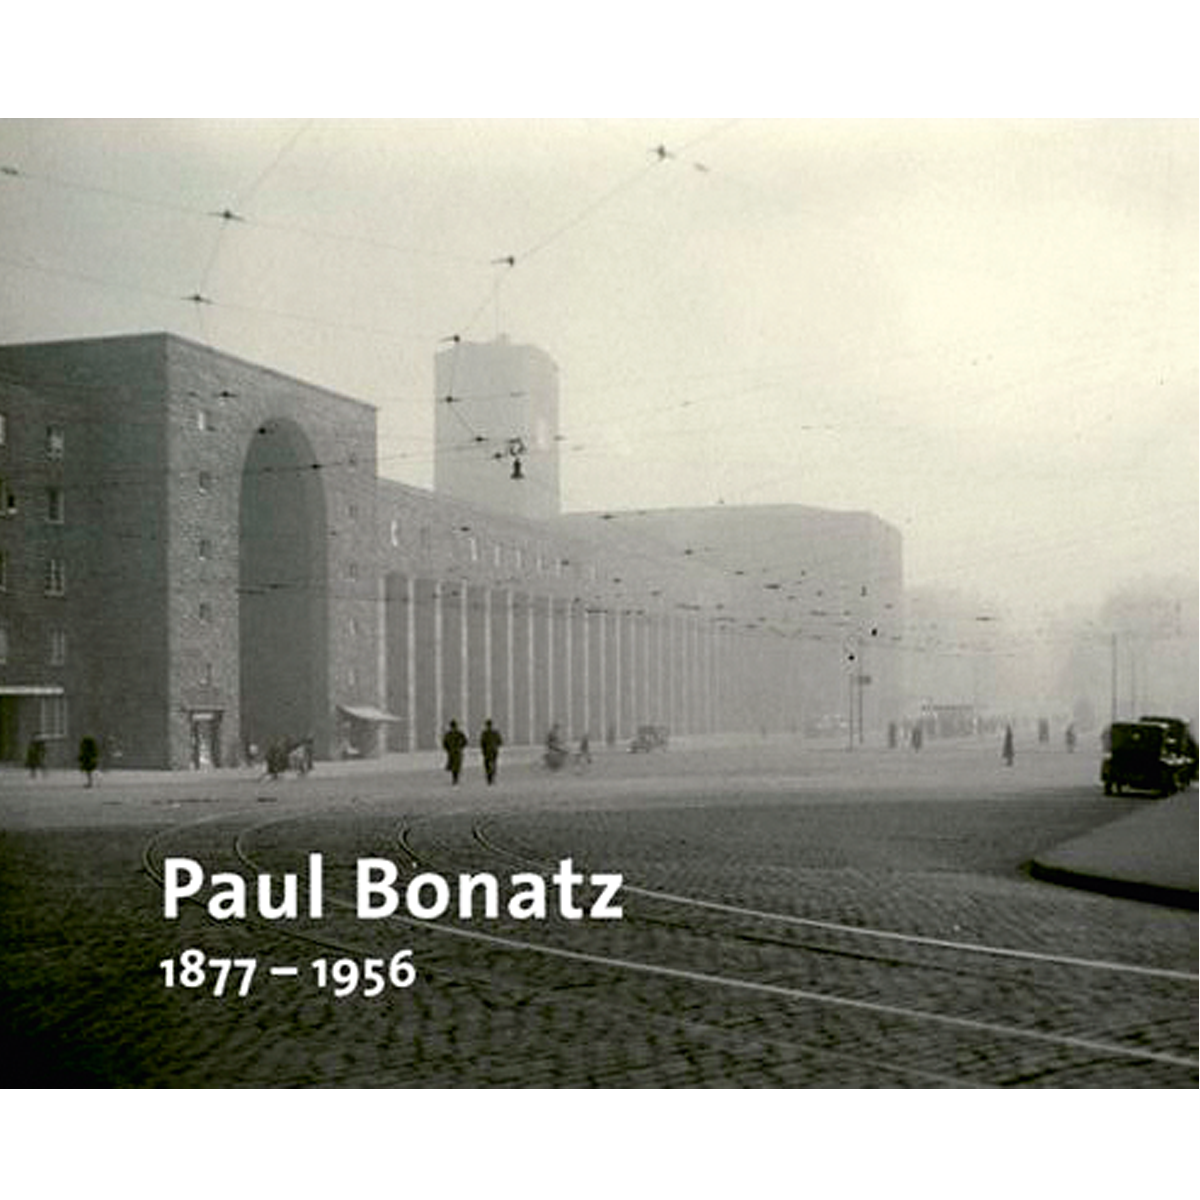 Paul Bonatz, 1877-1956